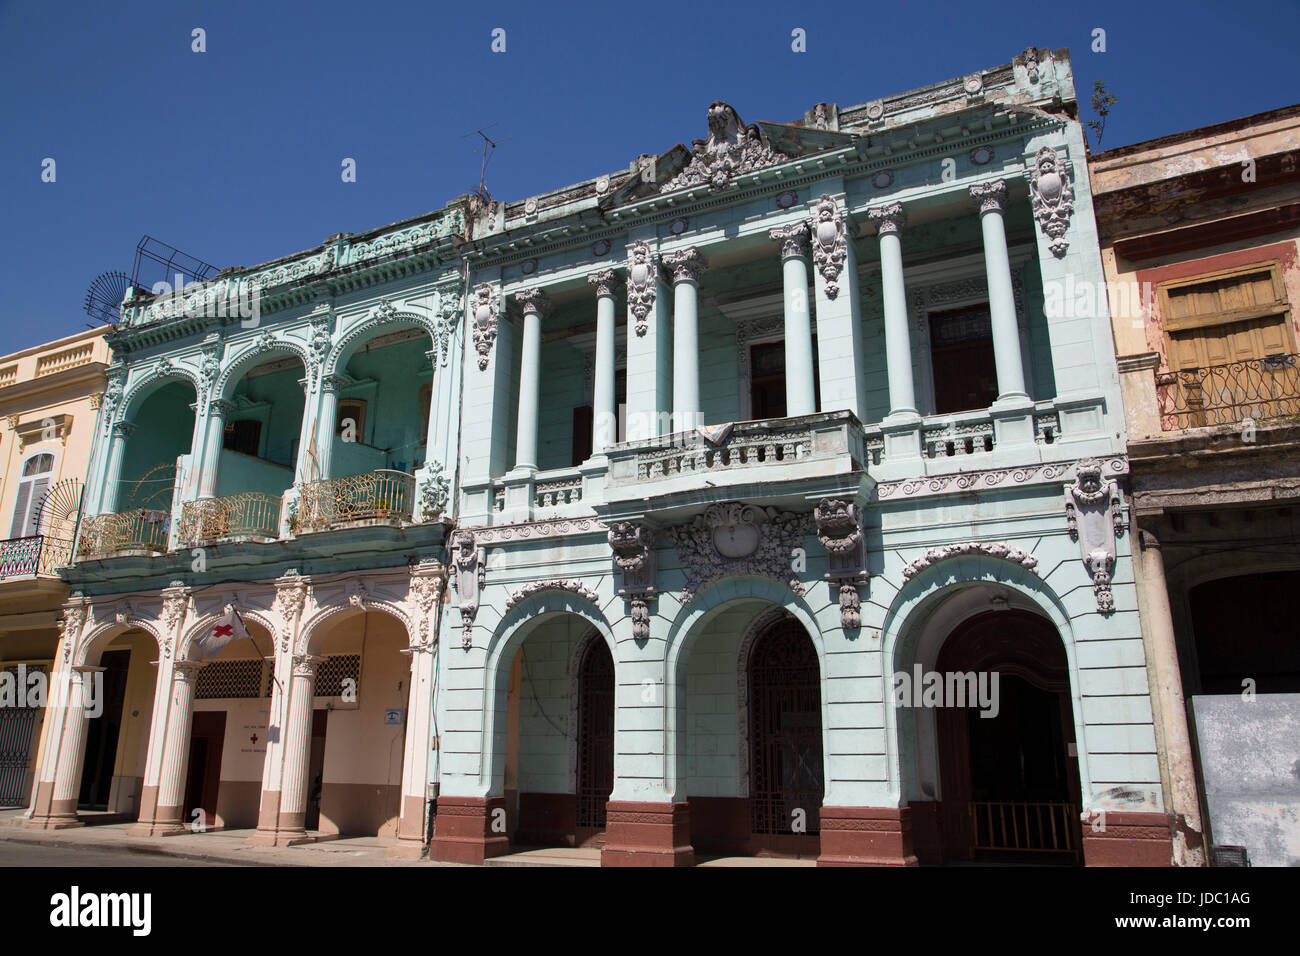 Buildings along Paseo del Prado, Centro Habana, Havana, Cuba Stock Photo